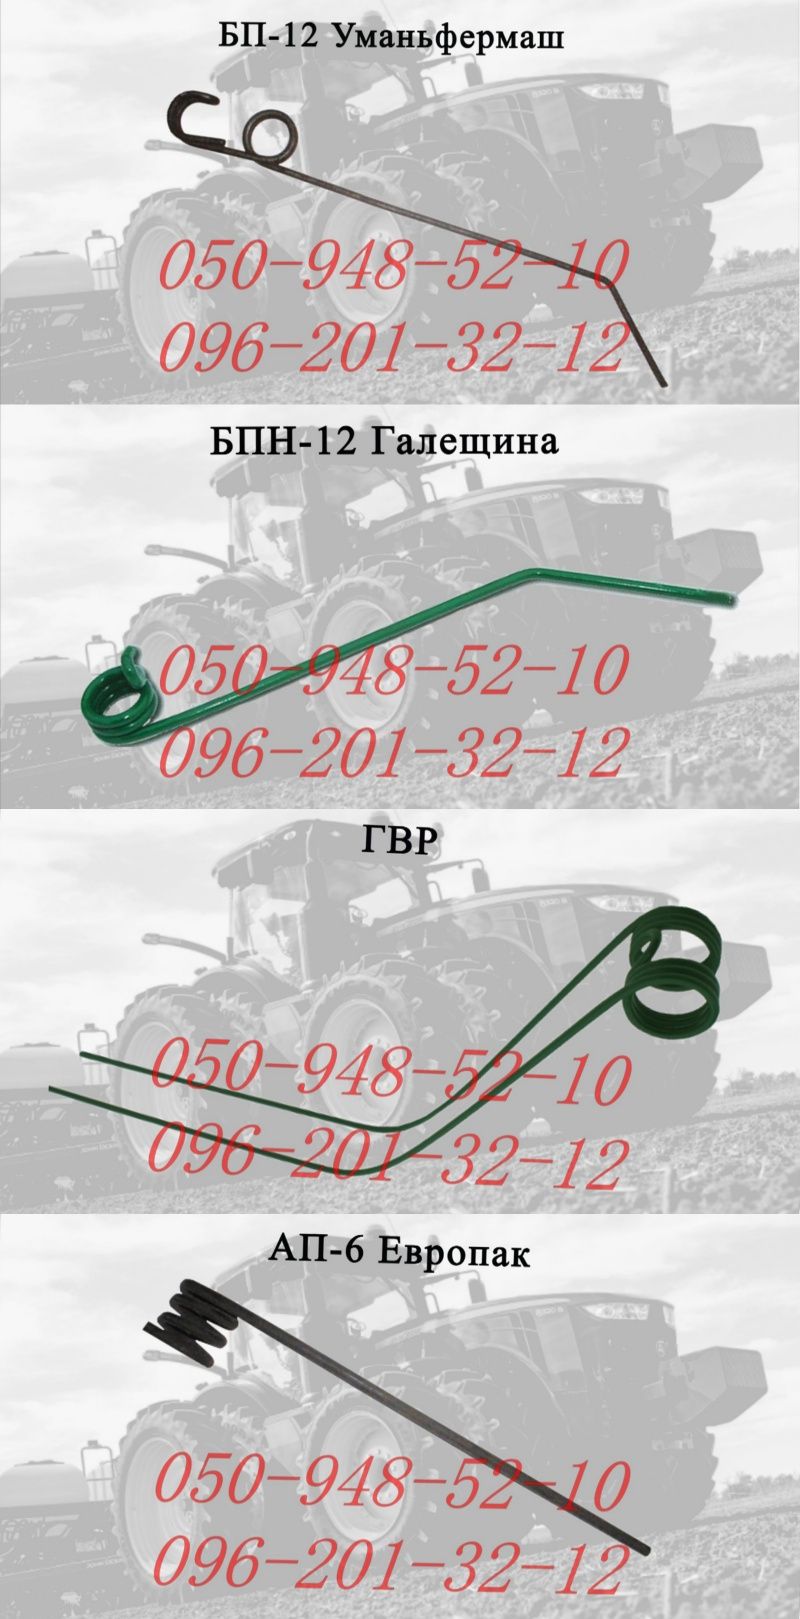 БП-12 Уманьфермаш, БПН-12 Галещина, ГВР, АП-6 Європак